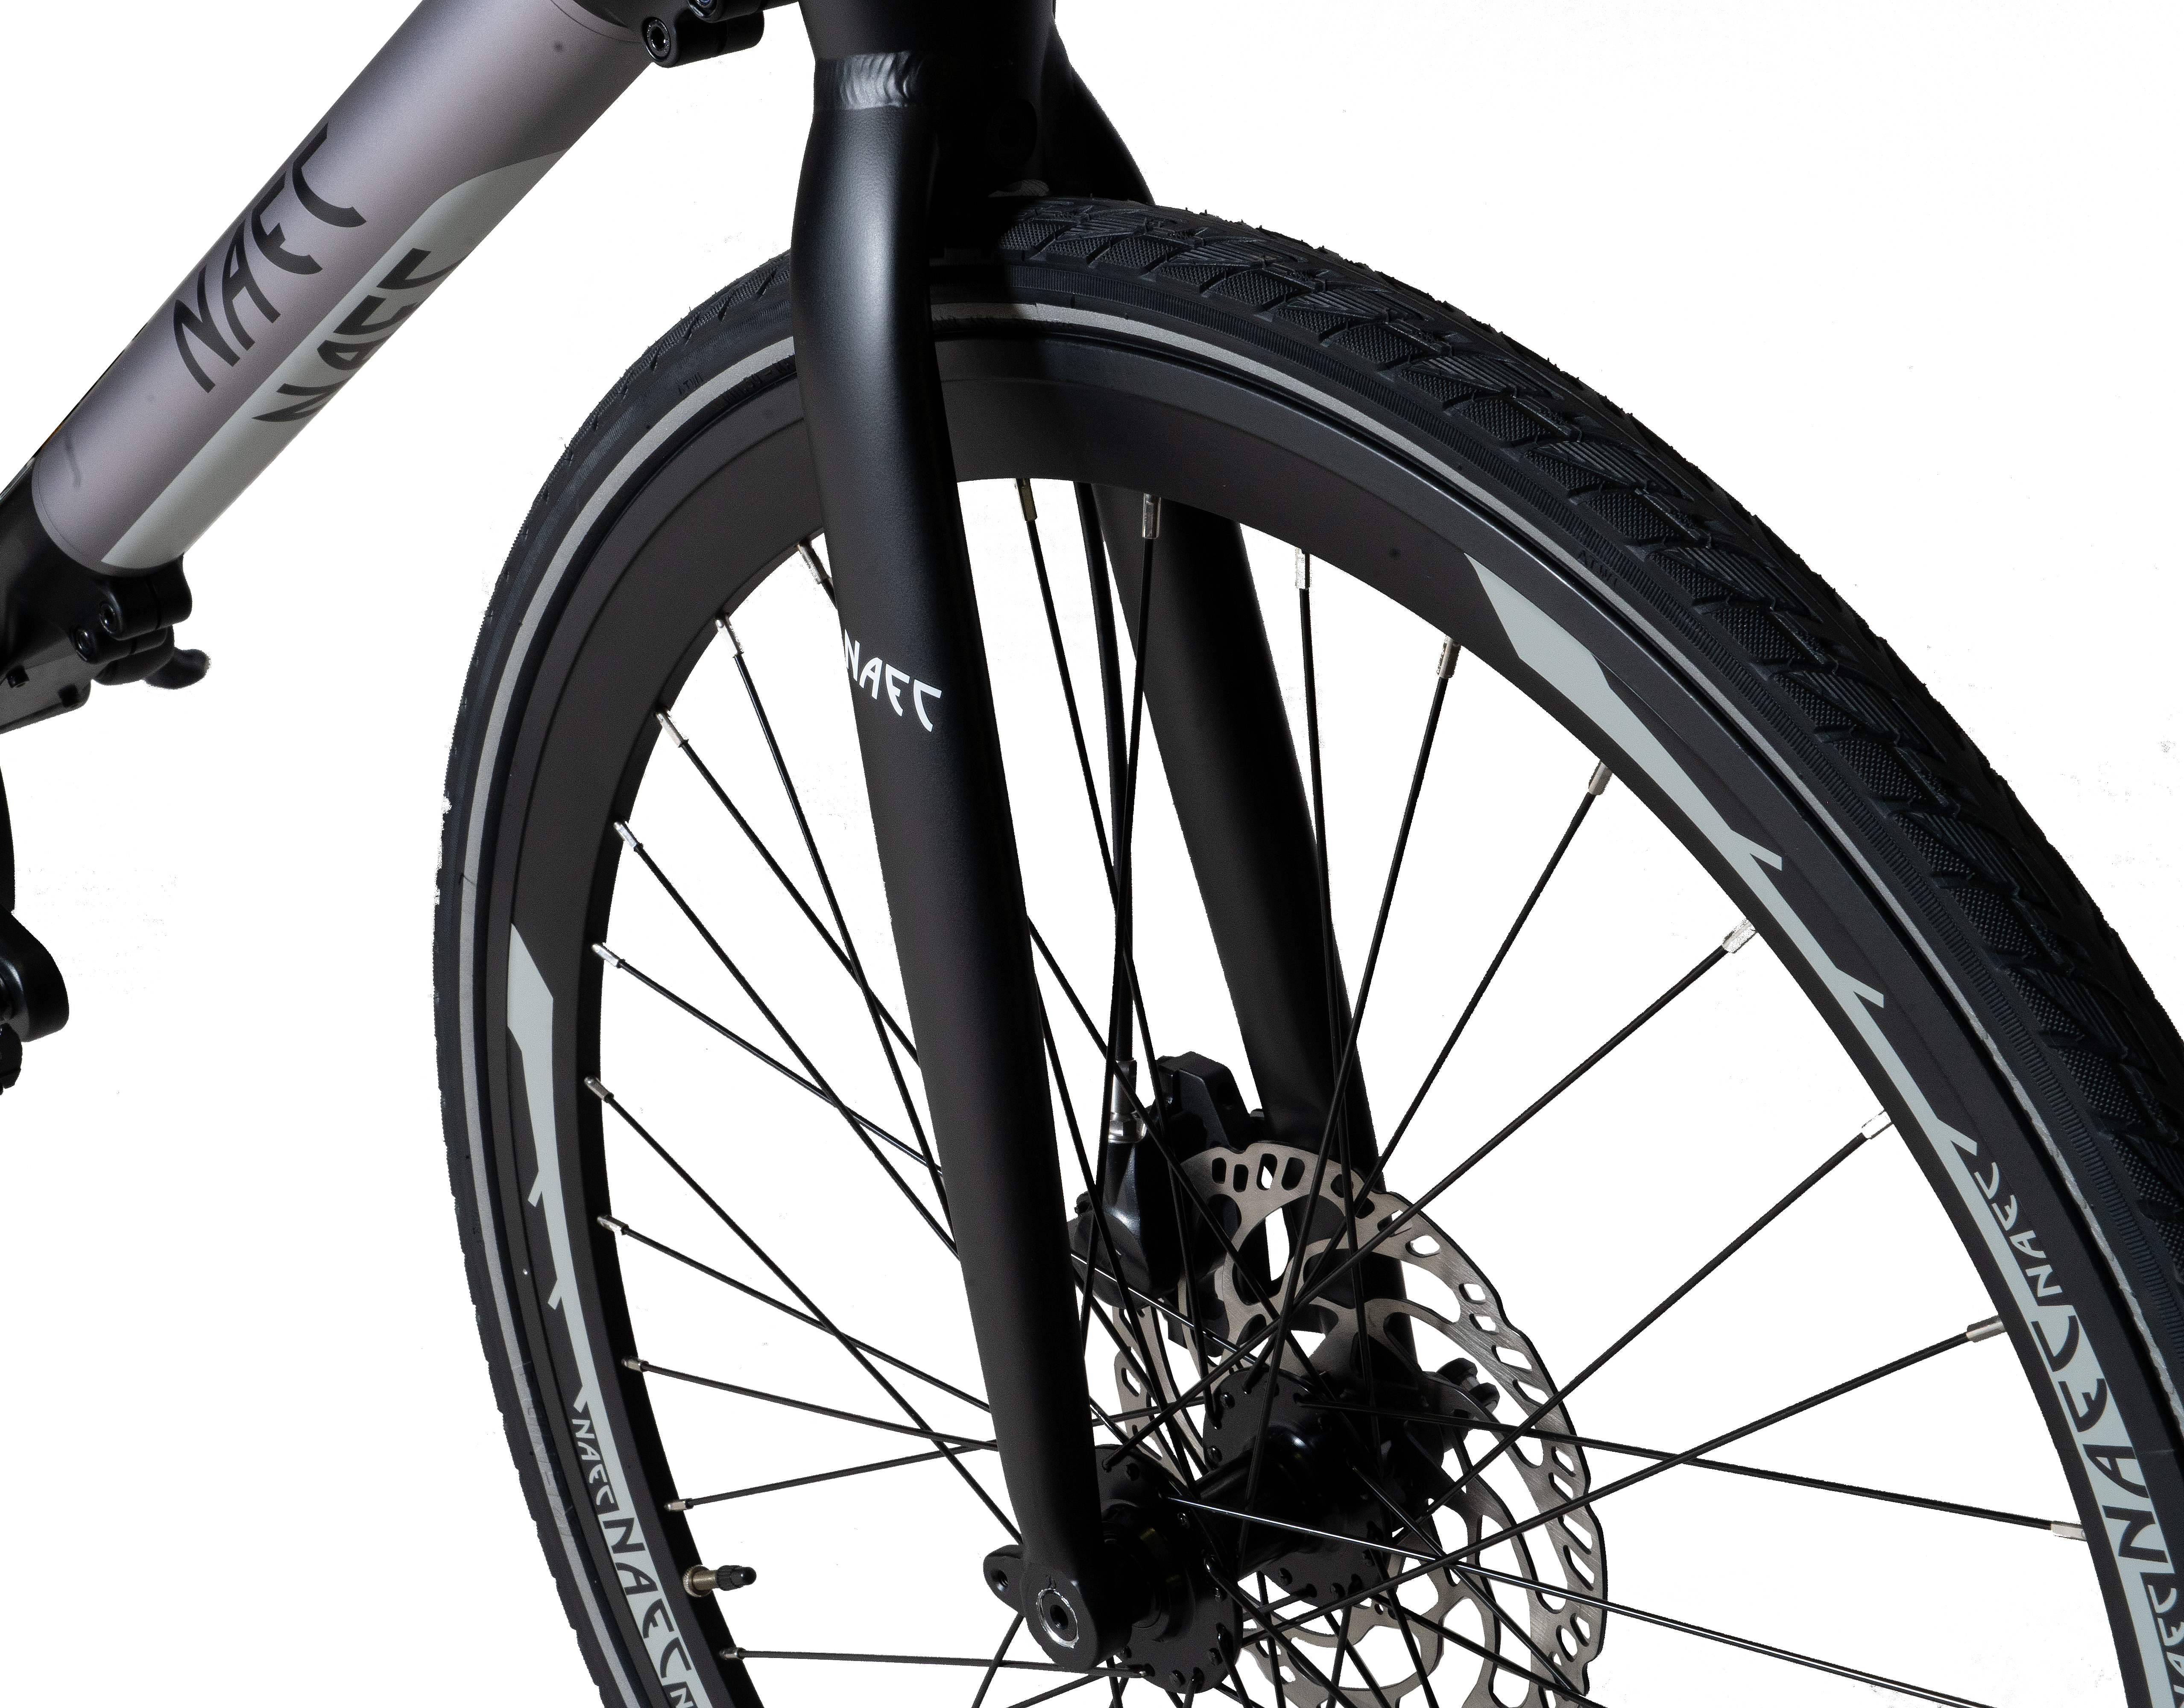 NAEC 28 Zoll eONE (Laufradgröße: cm, Modular grau schwarz Citybike Unisex-Rad, 53 Zoll, 280, grau) schwarz Rahmenhöhe: Riemenantrieb 28